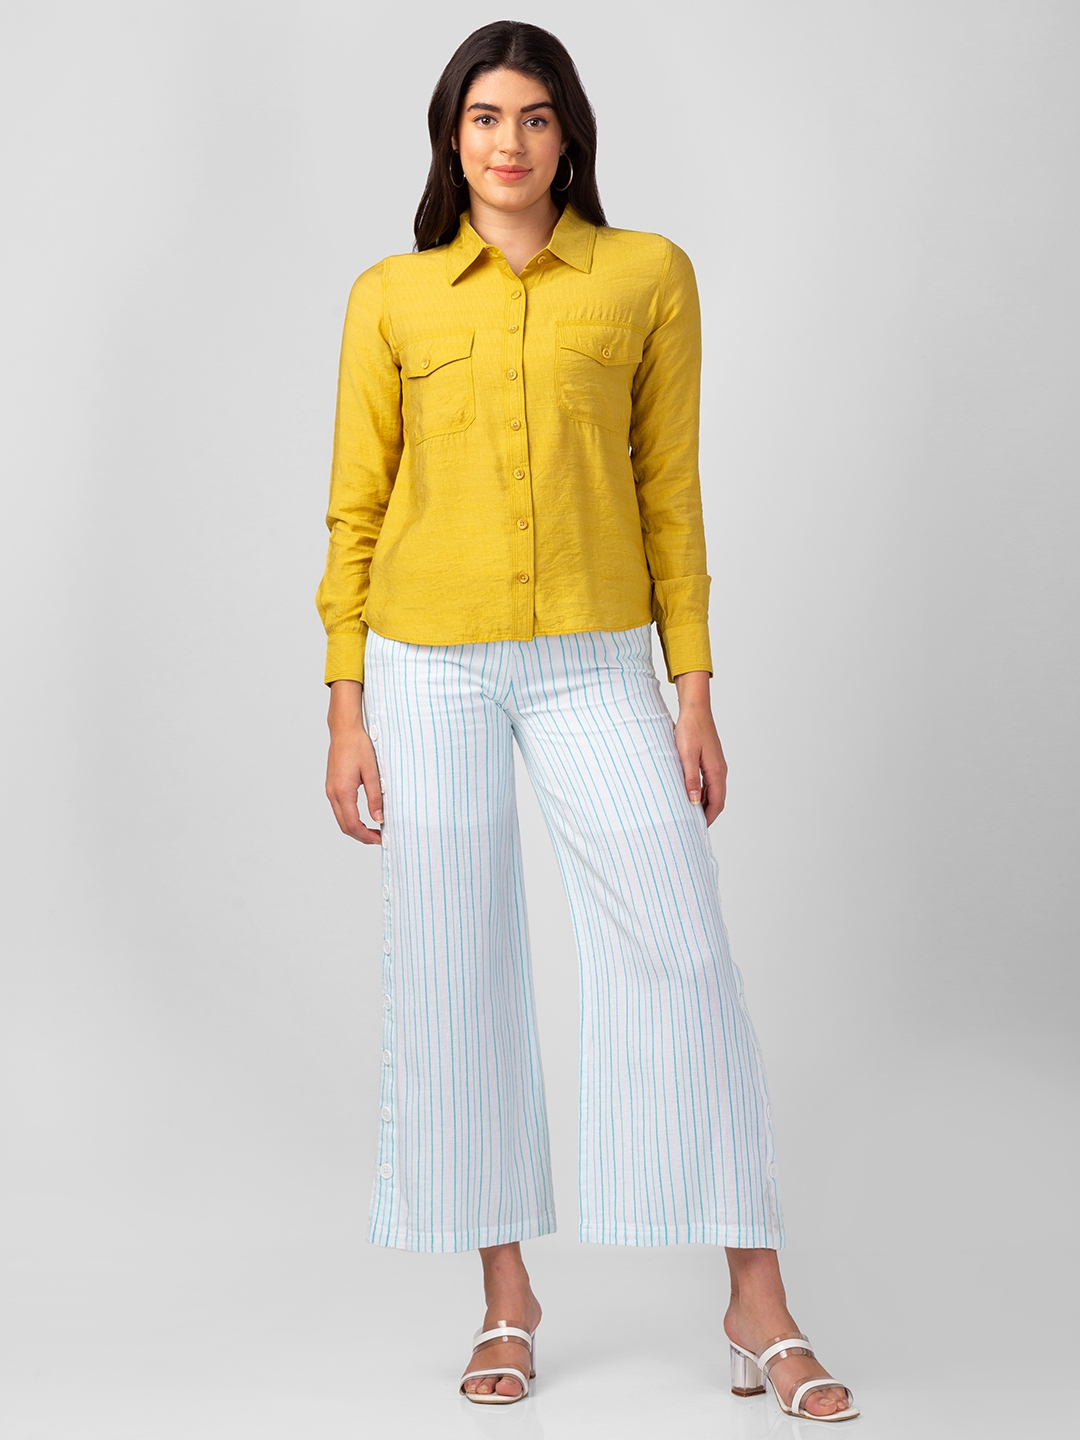 Spykar Women Mustard Polyester Regular Fit Plain Shirt